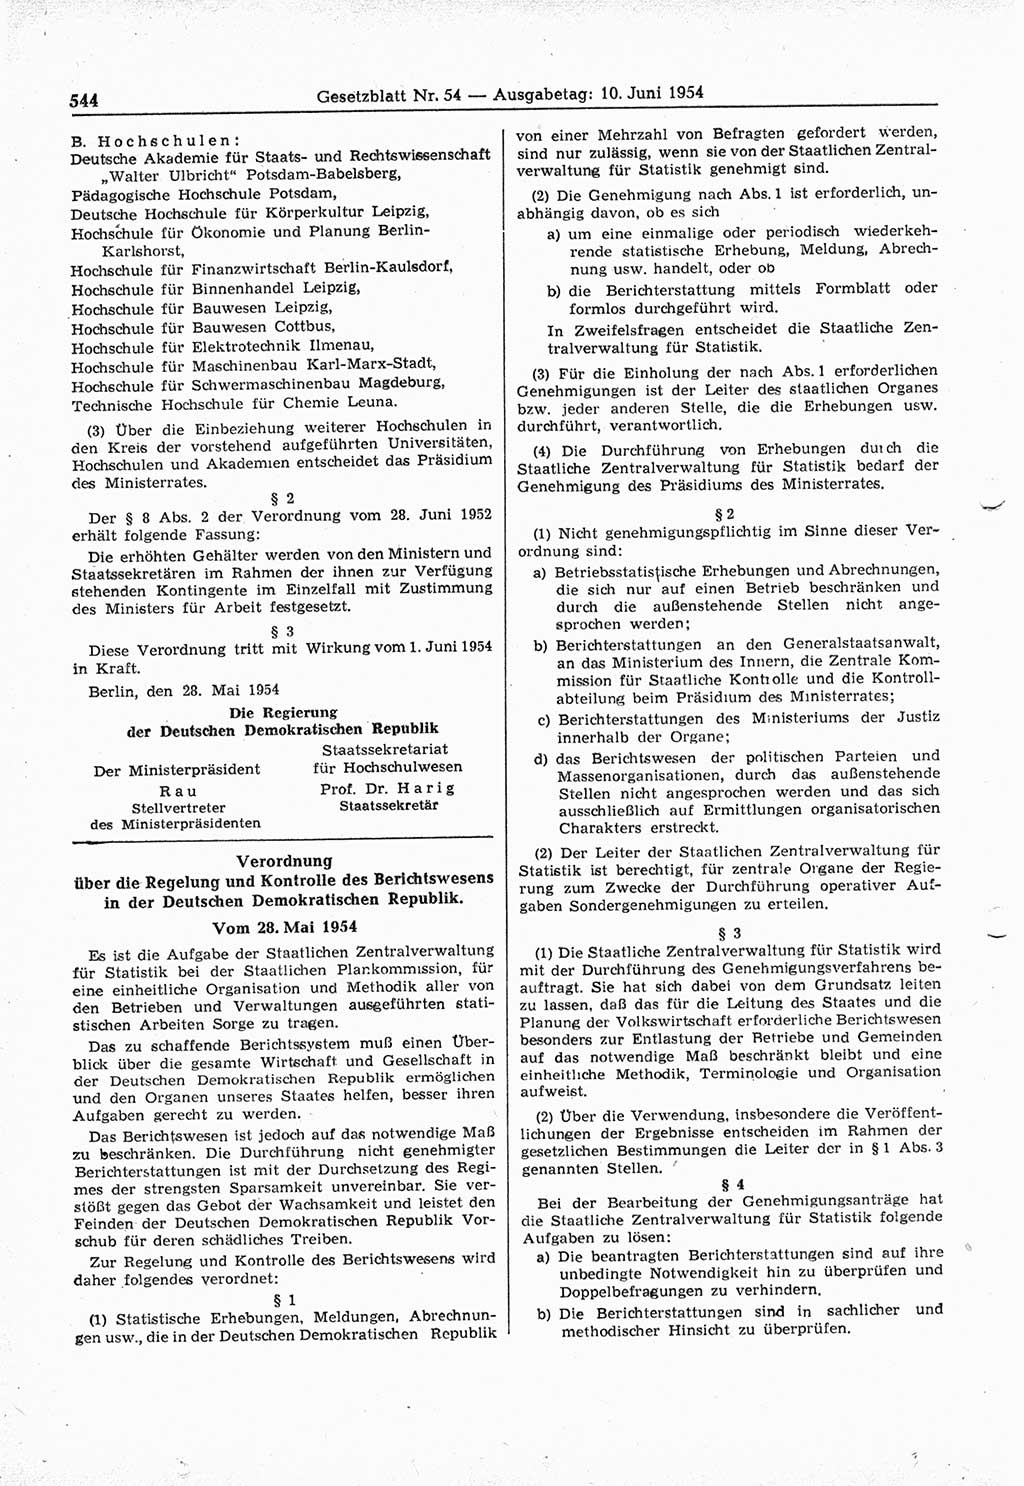 Gesetzblatt (GBl.) der Deutschen Demokratischen Republik (DDR) 1954, Seite 544 (GBl. DDR 1954, S. 544)